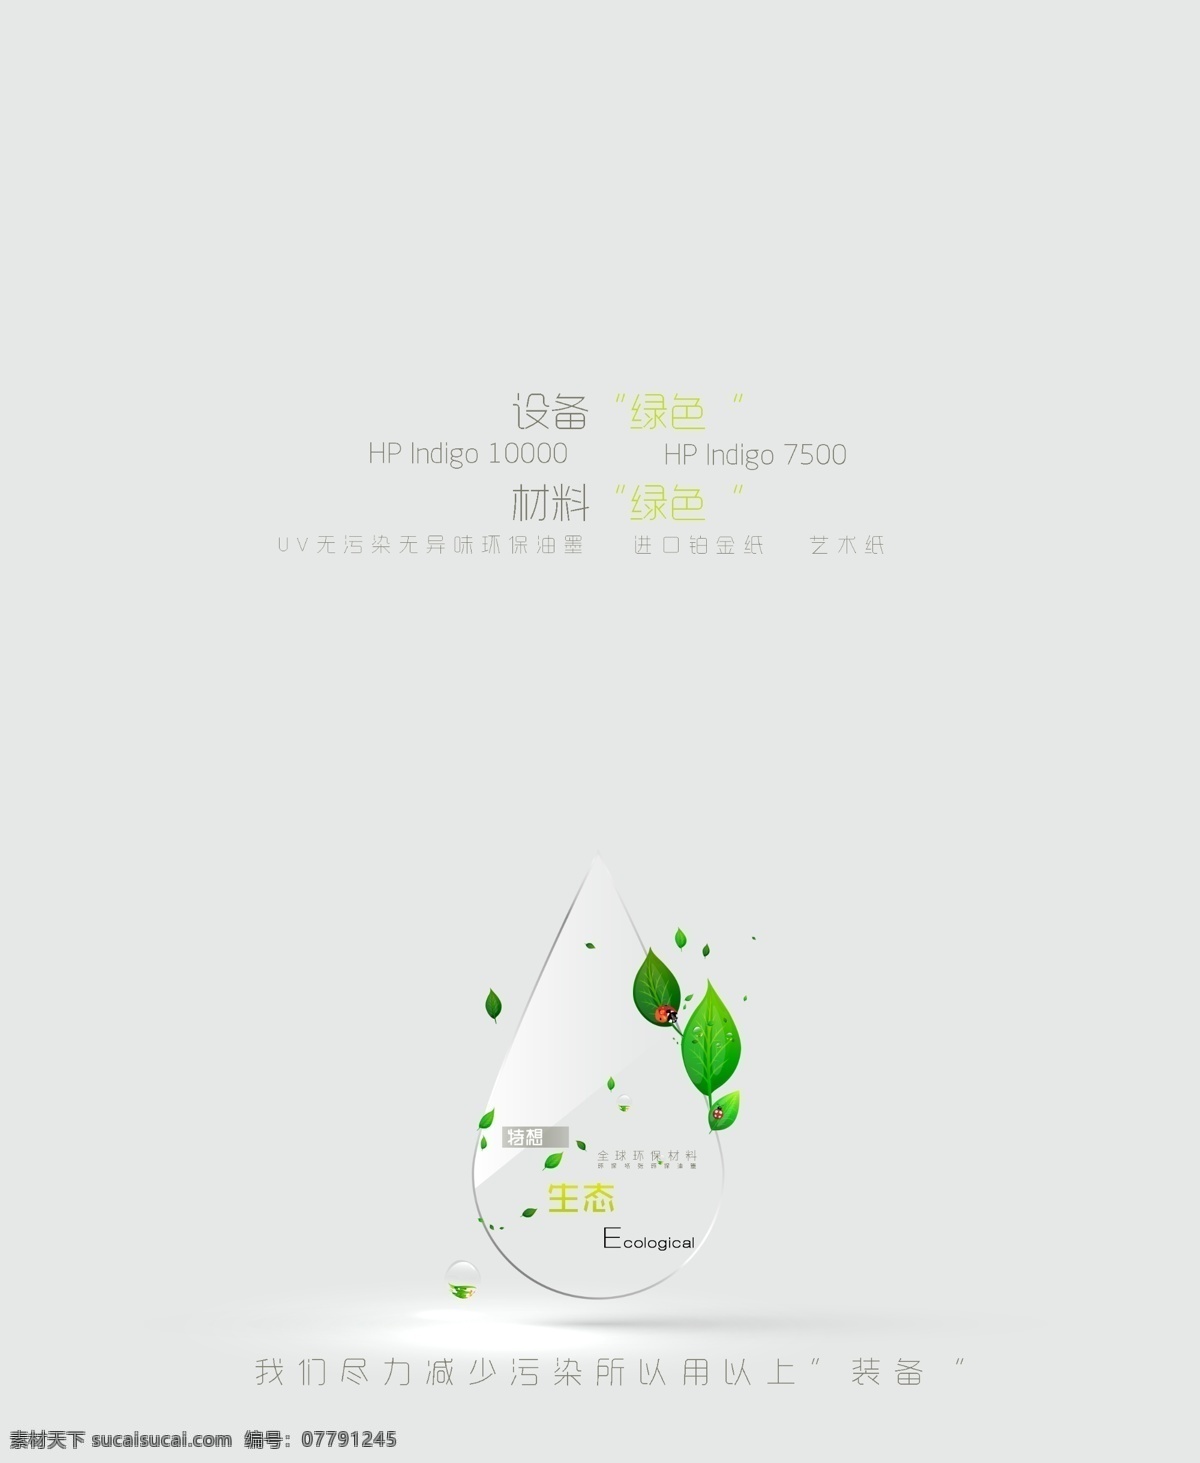 公司宣传 绿色 水滴 绿叶 平面设计 版式设计 简洁 大方 灰色